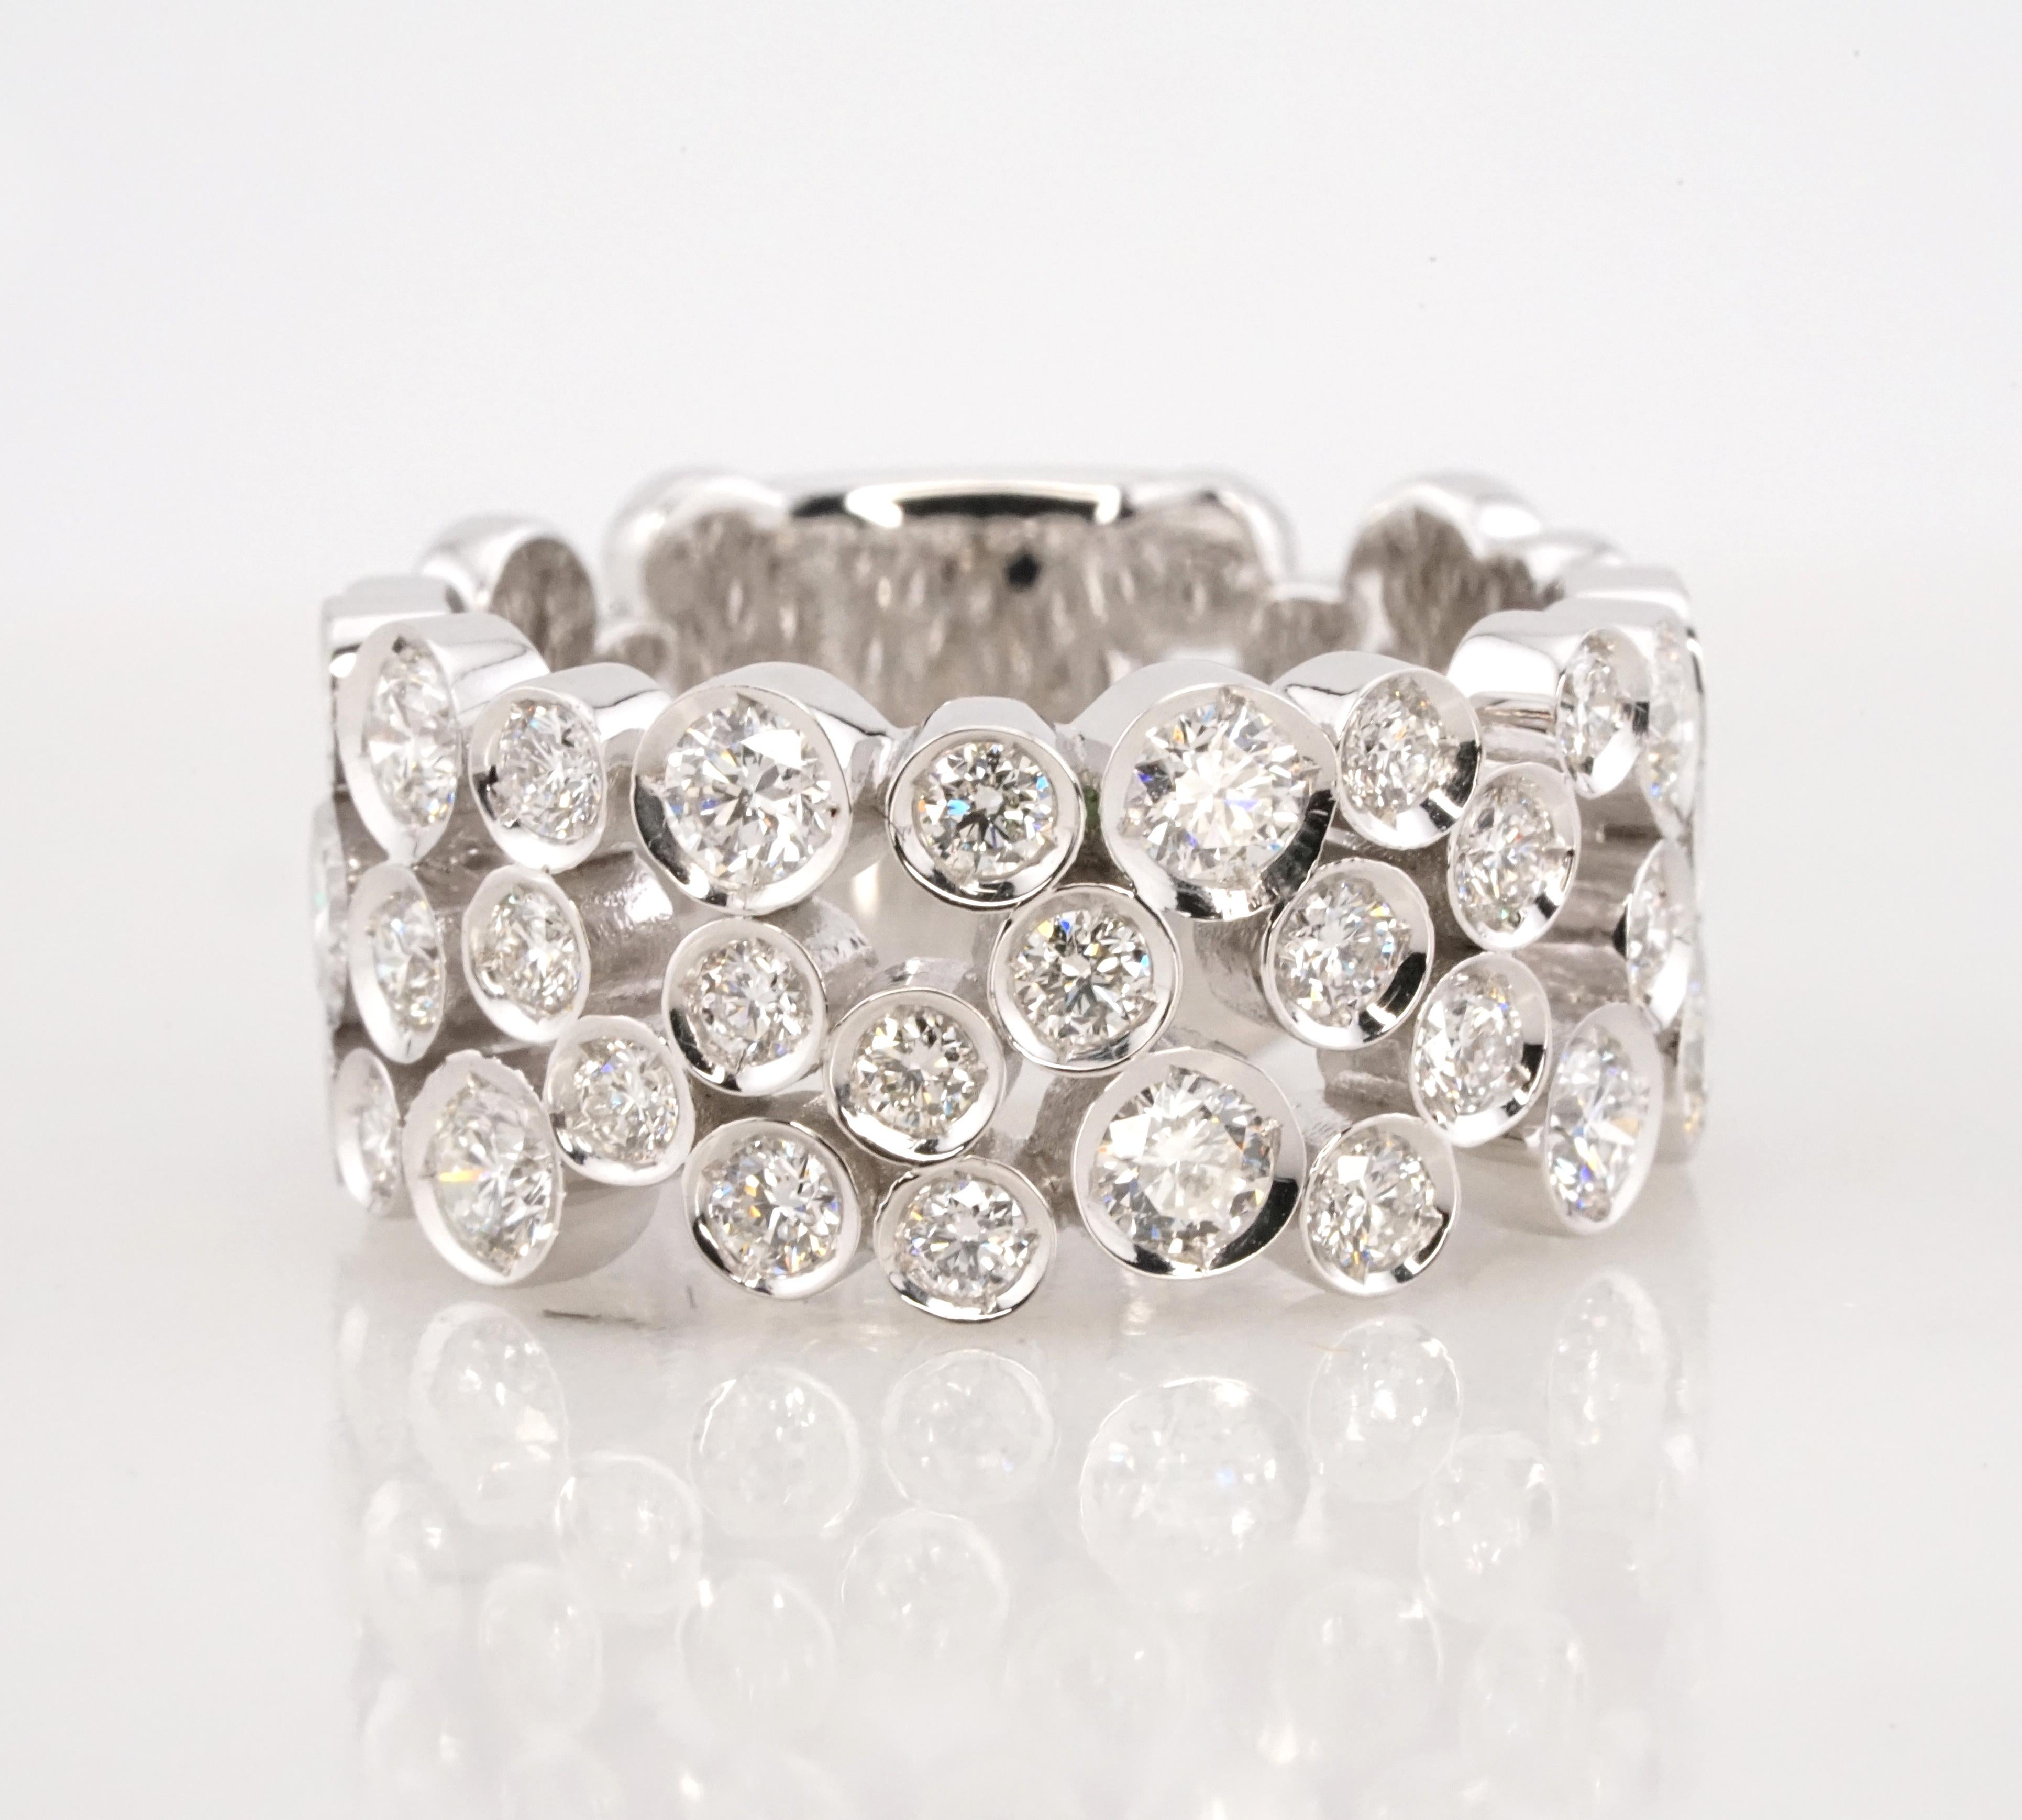 Découvrez l'art d'Antinori di Sanpietro avec ce luxueux bracelet d'éternité en diamant rond de 1,30 carat à taille brillante. Méticuleusement réalisée en or blanc lustré 14K, cette bague témoigne d'un savoir-faire et d'un style intemporels. Il